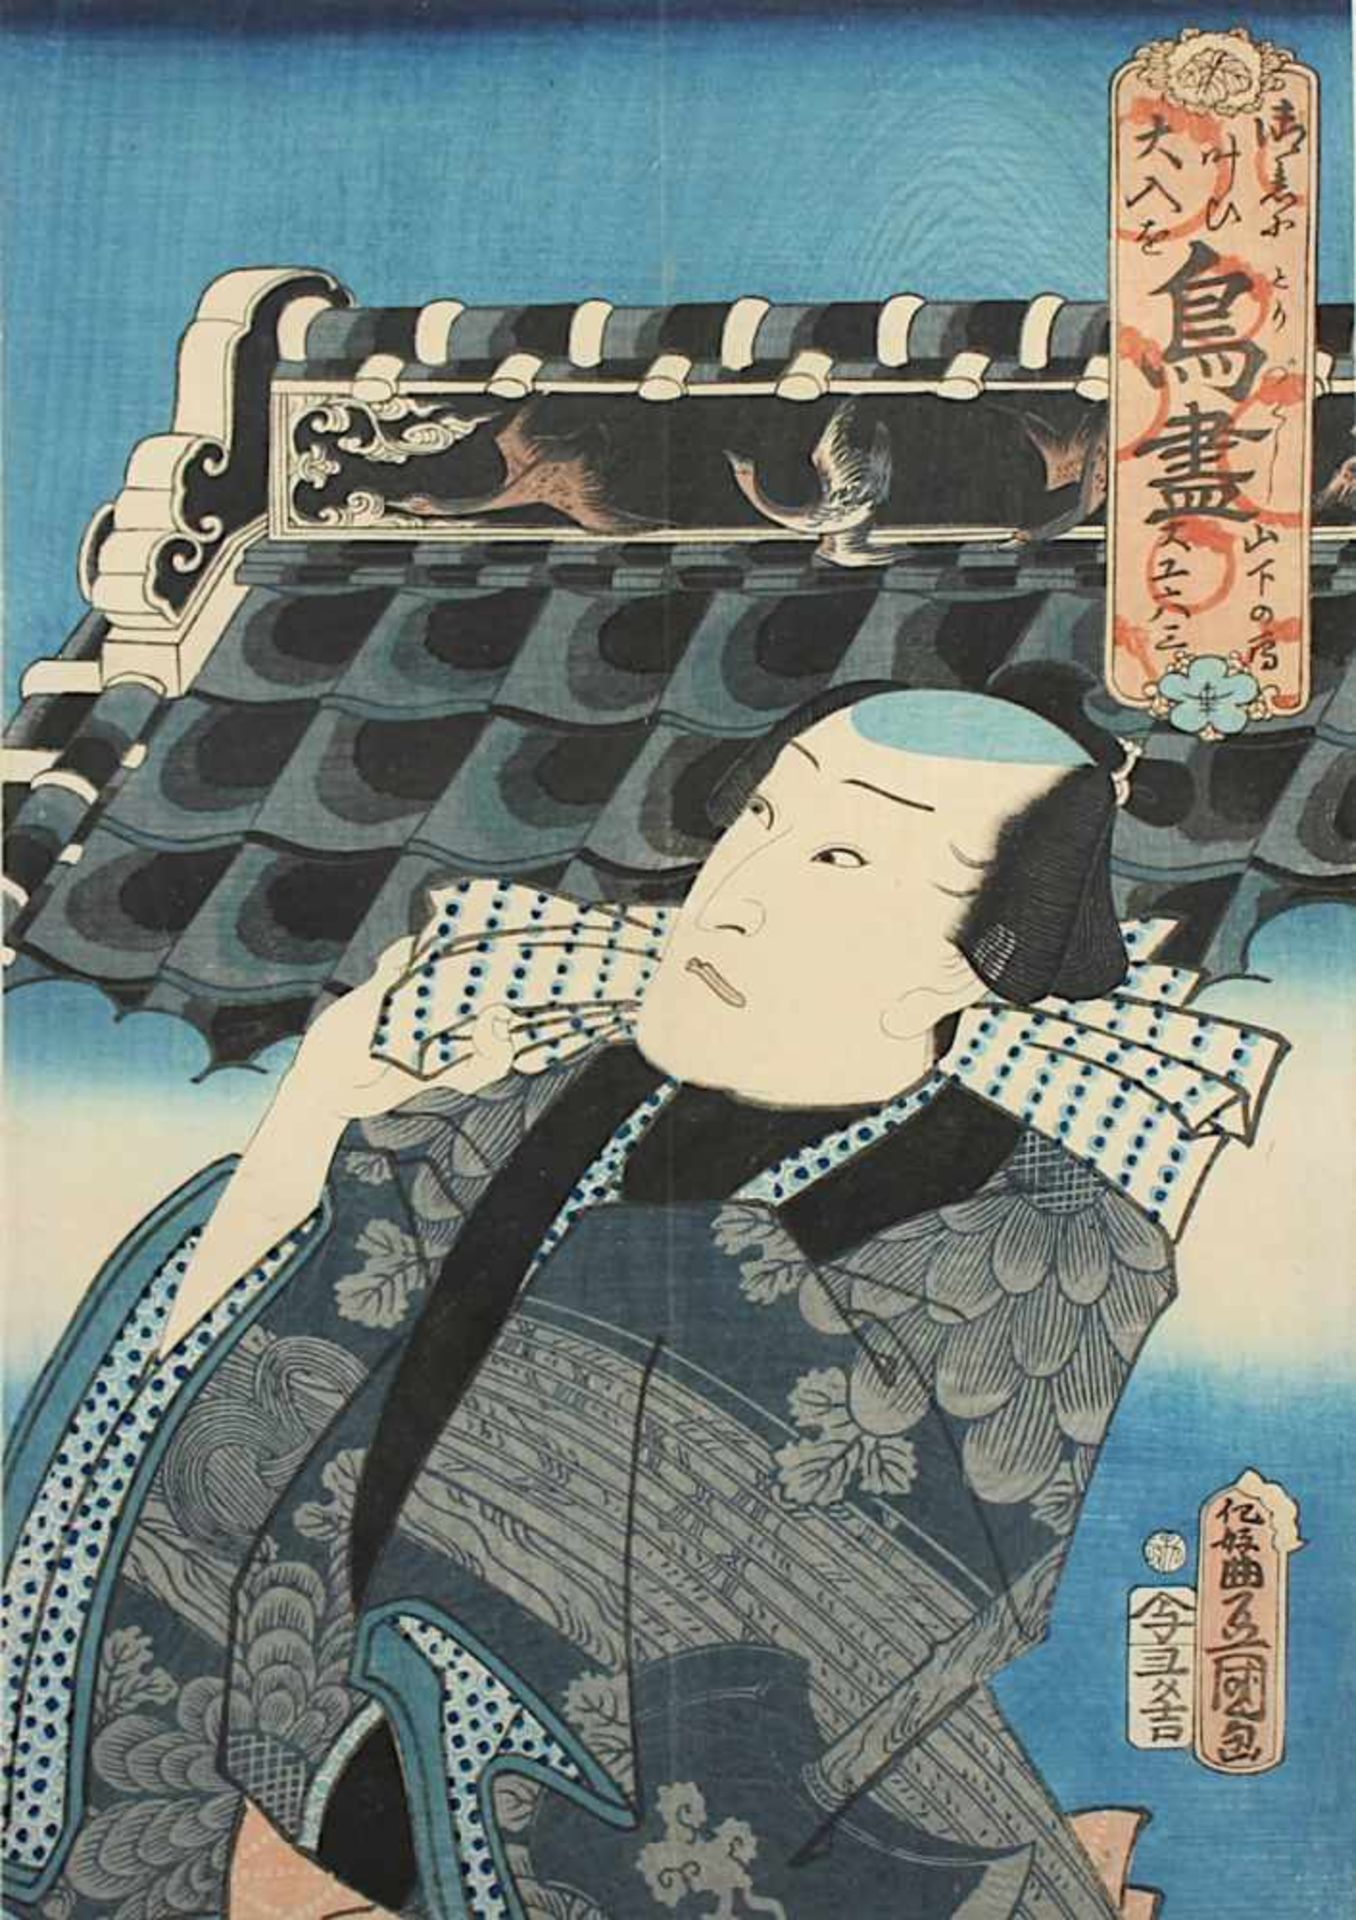 UTAGAWA KUNISADA, aus der Serie "Tori zukushi" das Blatt "Yamashita no kari - The geese in